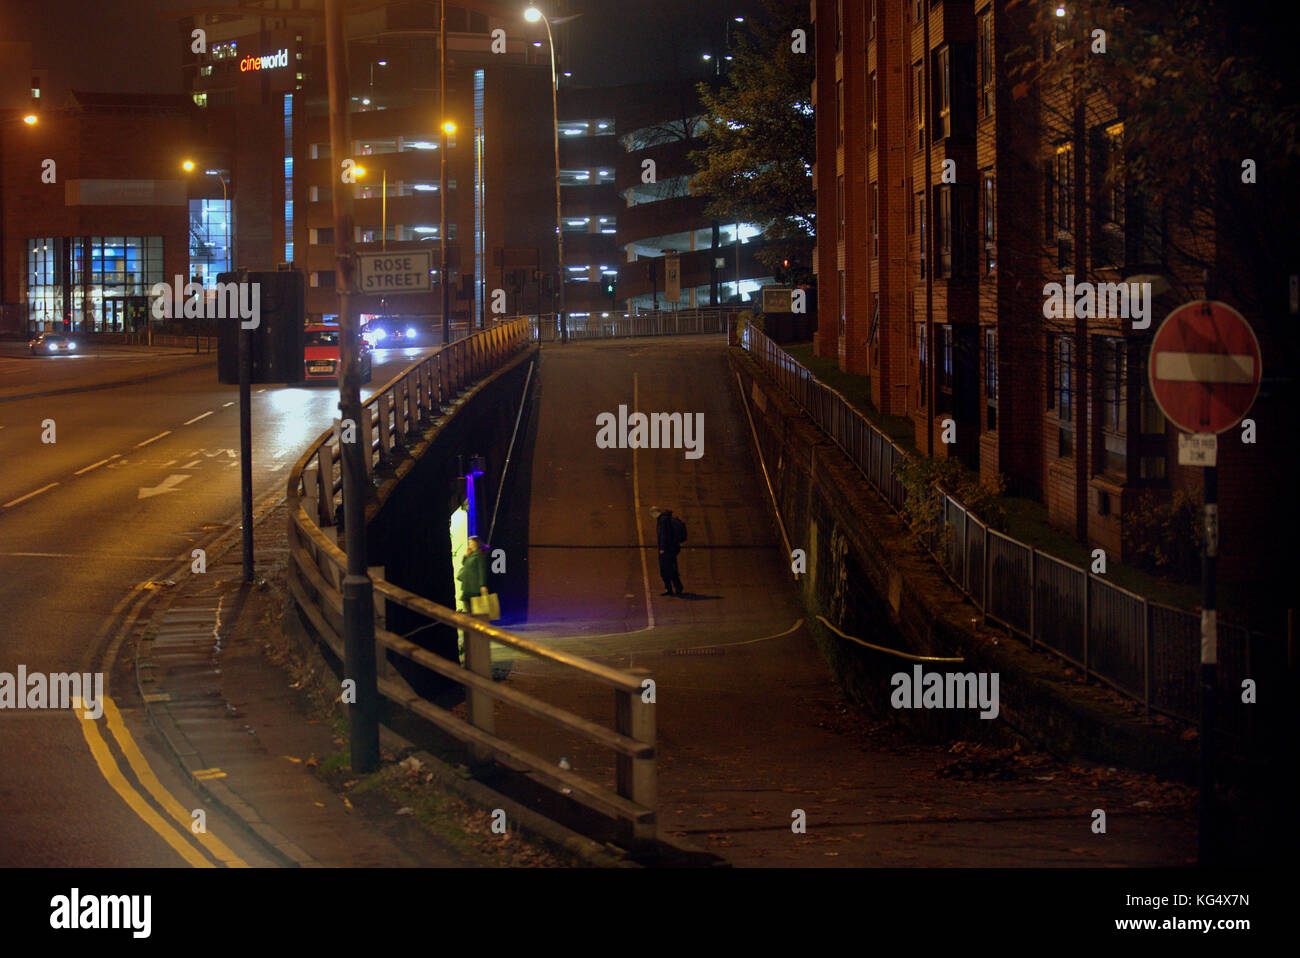 Rose Street Glasgow gefährlichen Unterführung Eingang am späten Abend einsame Straße kein Eintrag melden einsame Figur Verbrechen Gefahr Stockfoto